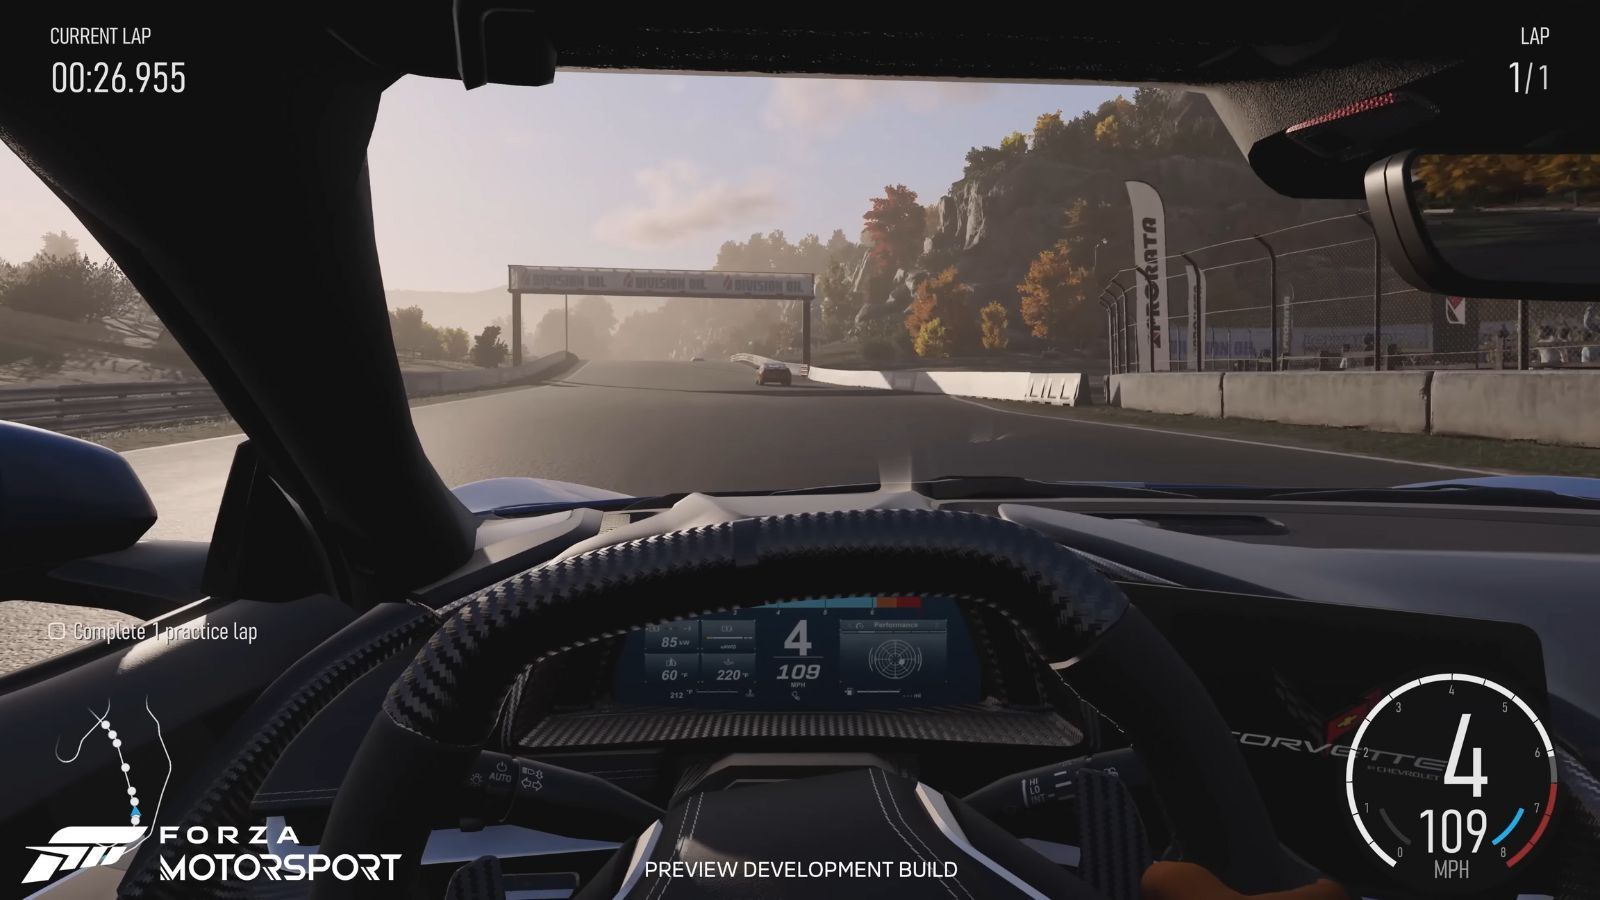 Los jugadores de Forza Motorsport critican los «horribles» espejos retrovisores del juego